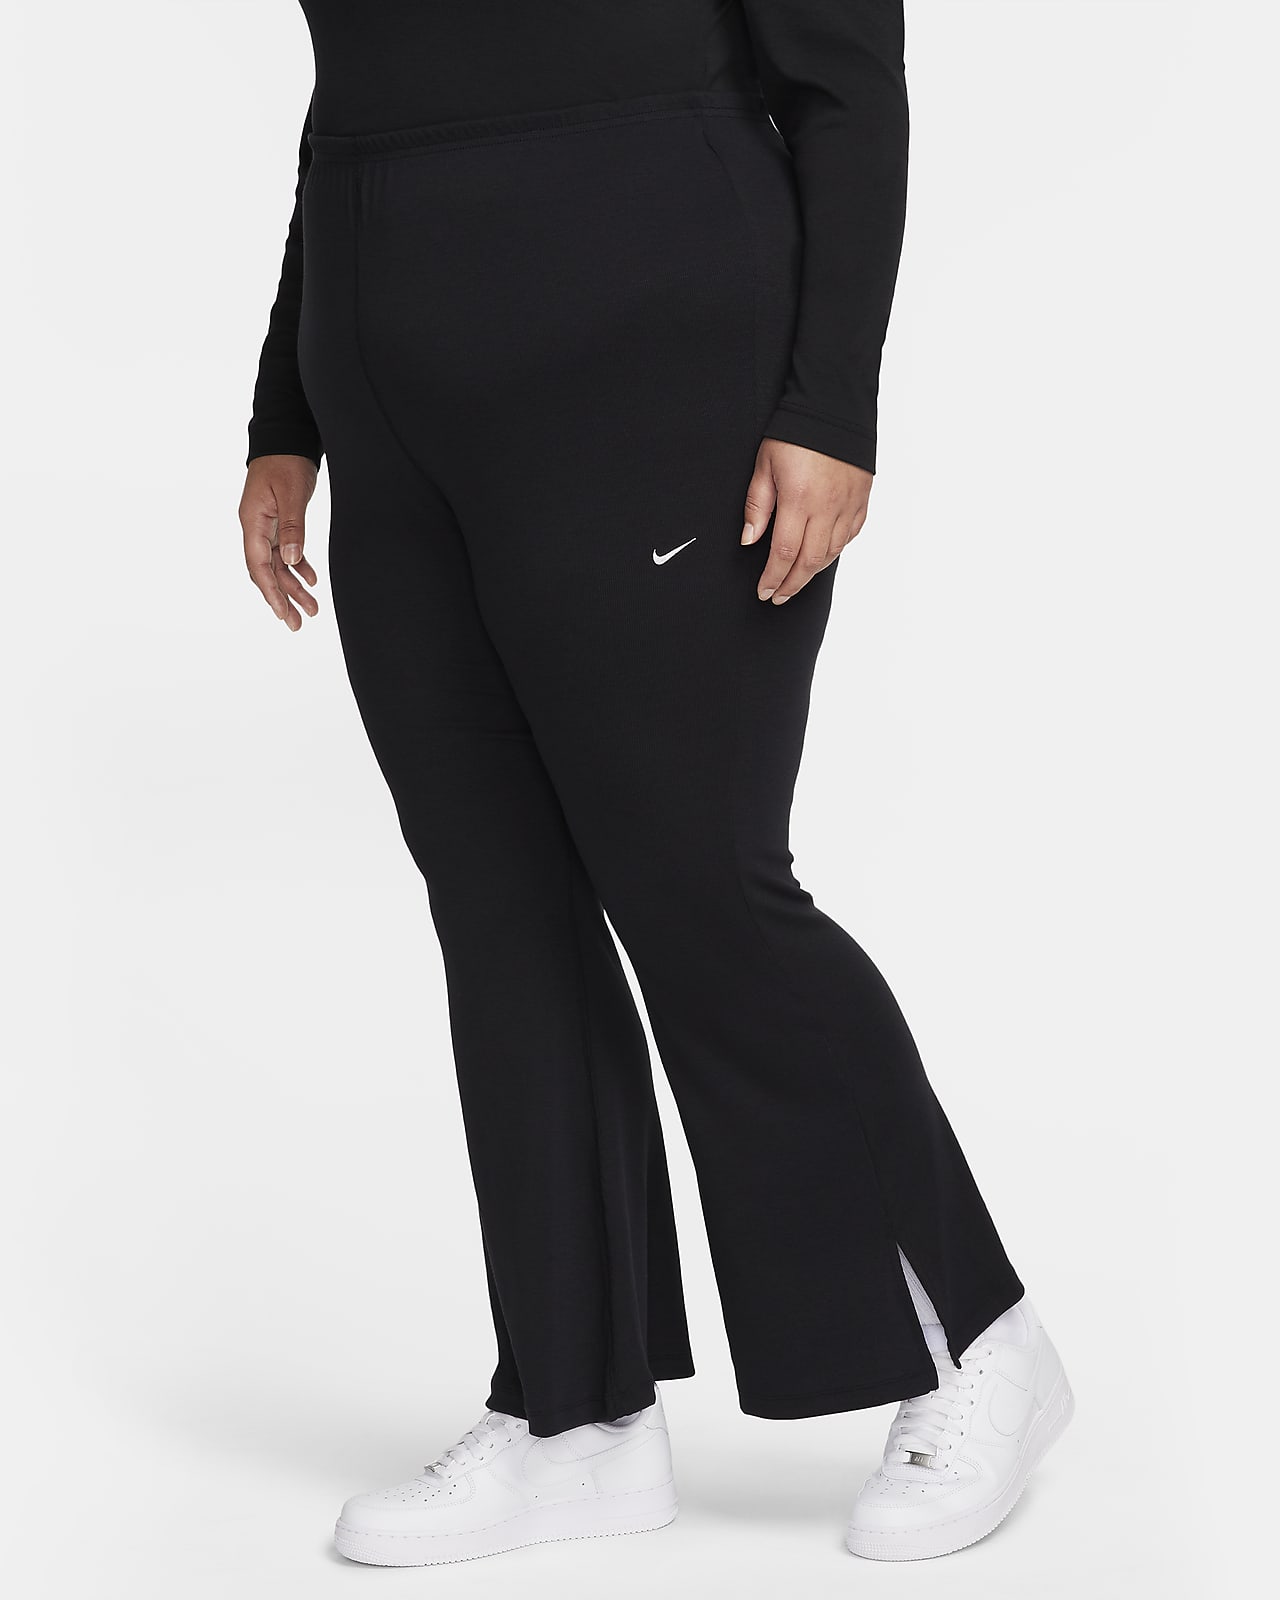 Leggings de tela de minicanalé acampanados y ajustados para mujer talla  grande Nike Sportswear Chill Knit.